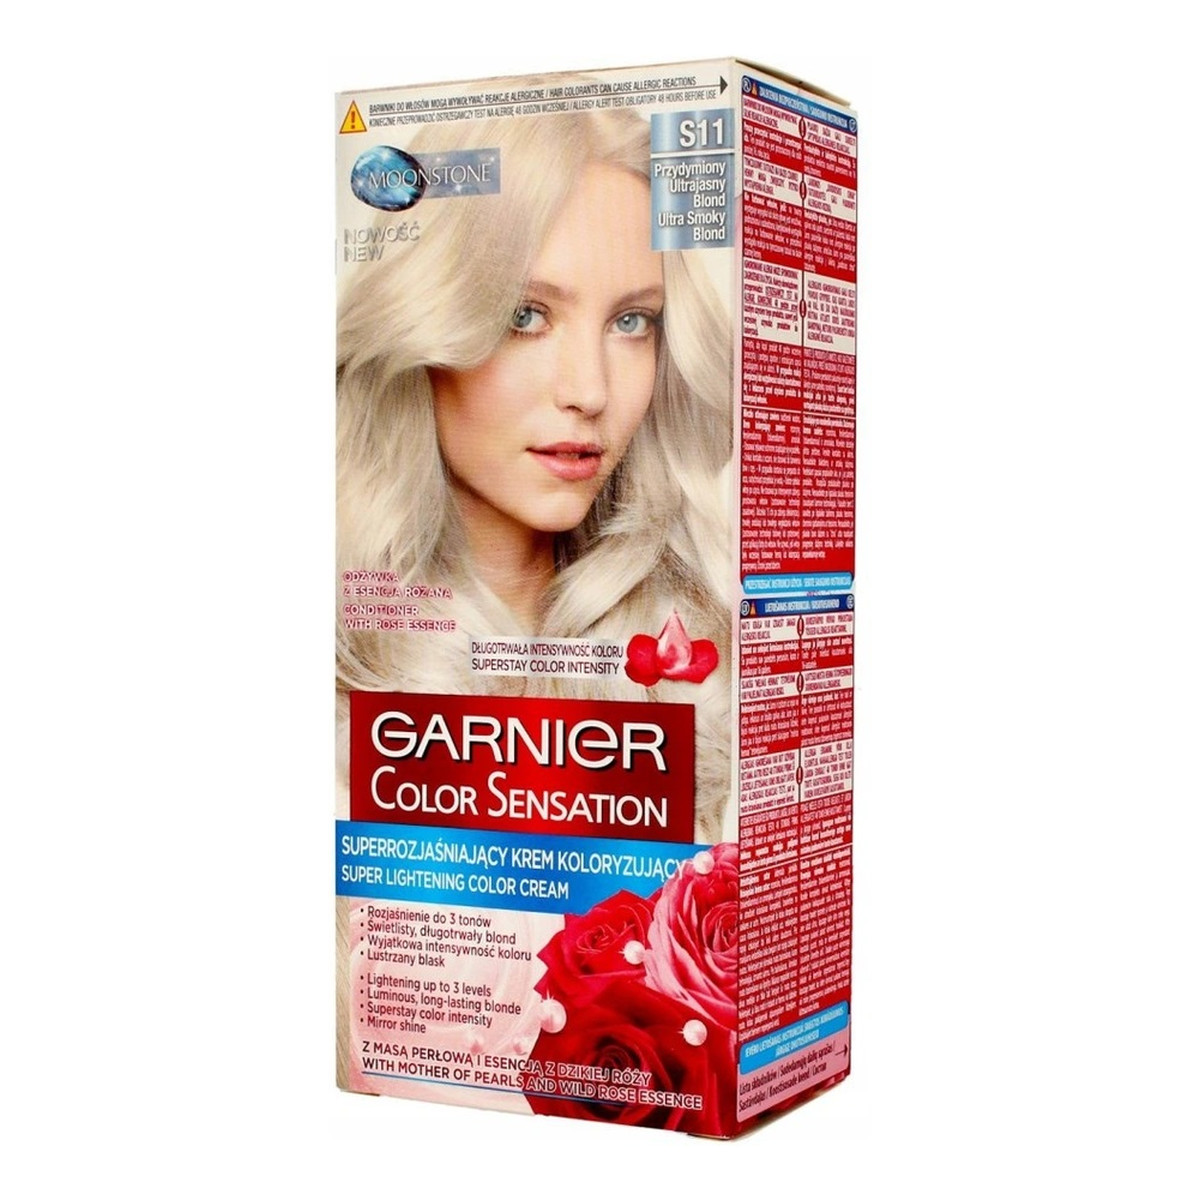 Garnier Krem Koloryzujący Do Włosów Color Sensation 110ml